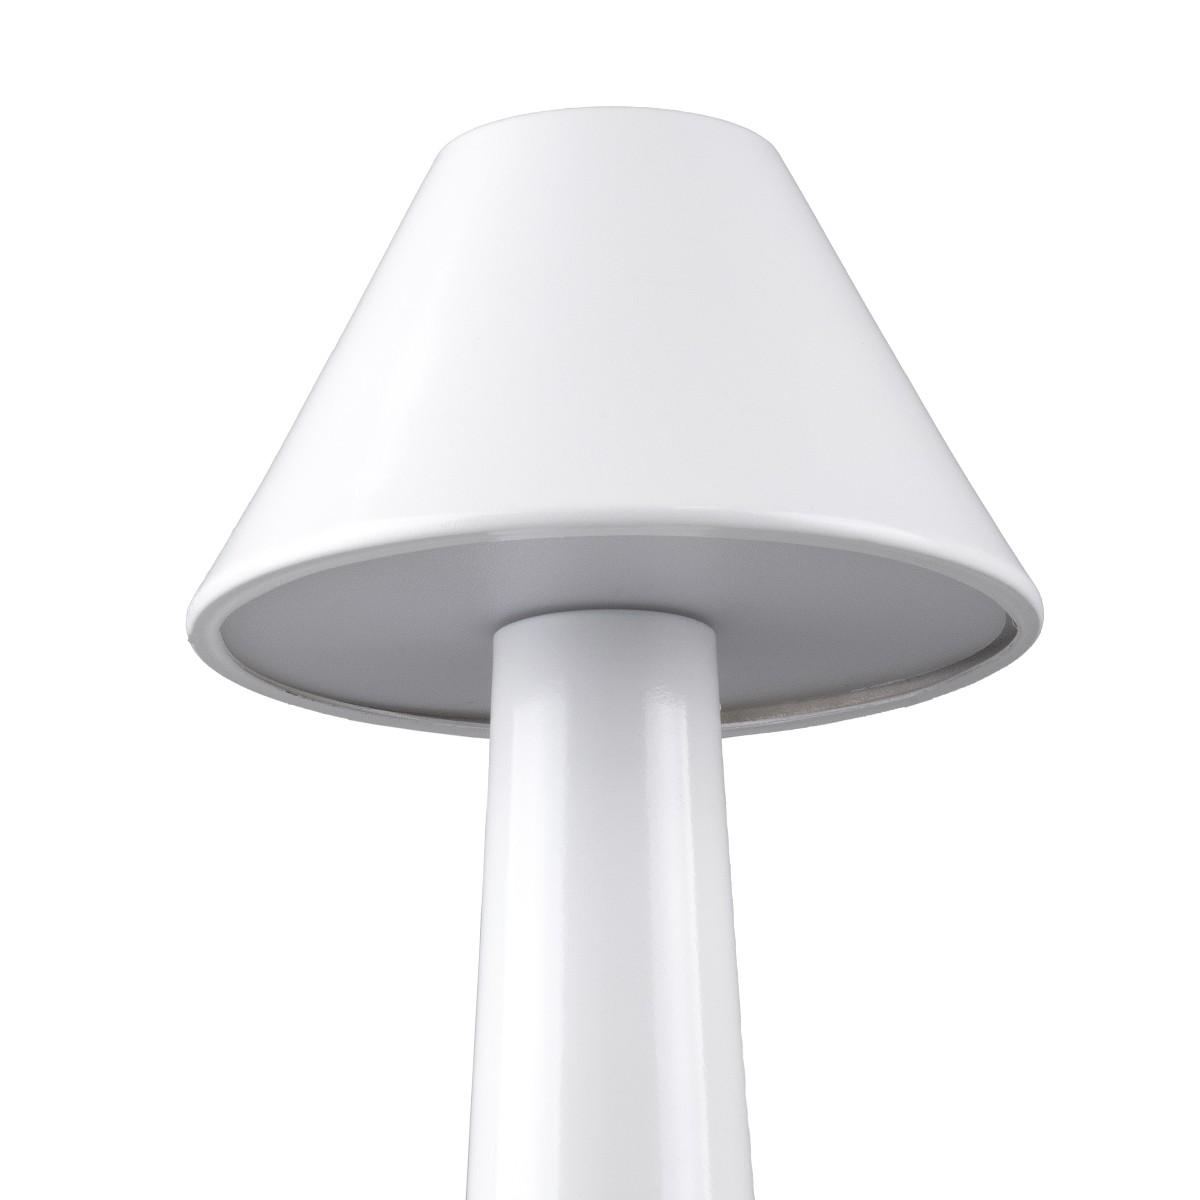 LED Επιτραπέζιο Φωτιστικό Λευκό 1.5W MOLLY Επαναφορτιζόμενο με Μπαταρία και Διακόπτη Αφής Dimmable -  Φ10 x 23cm